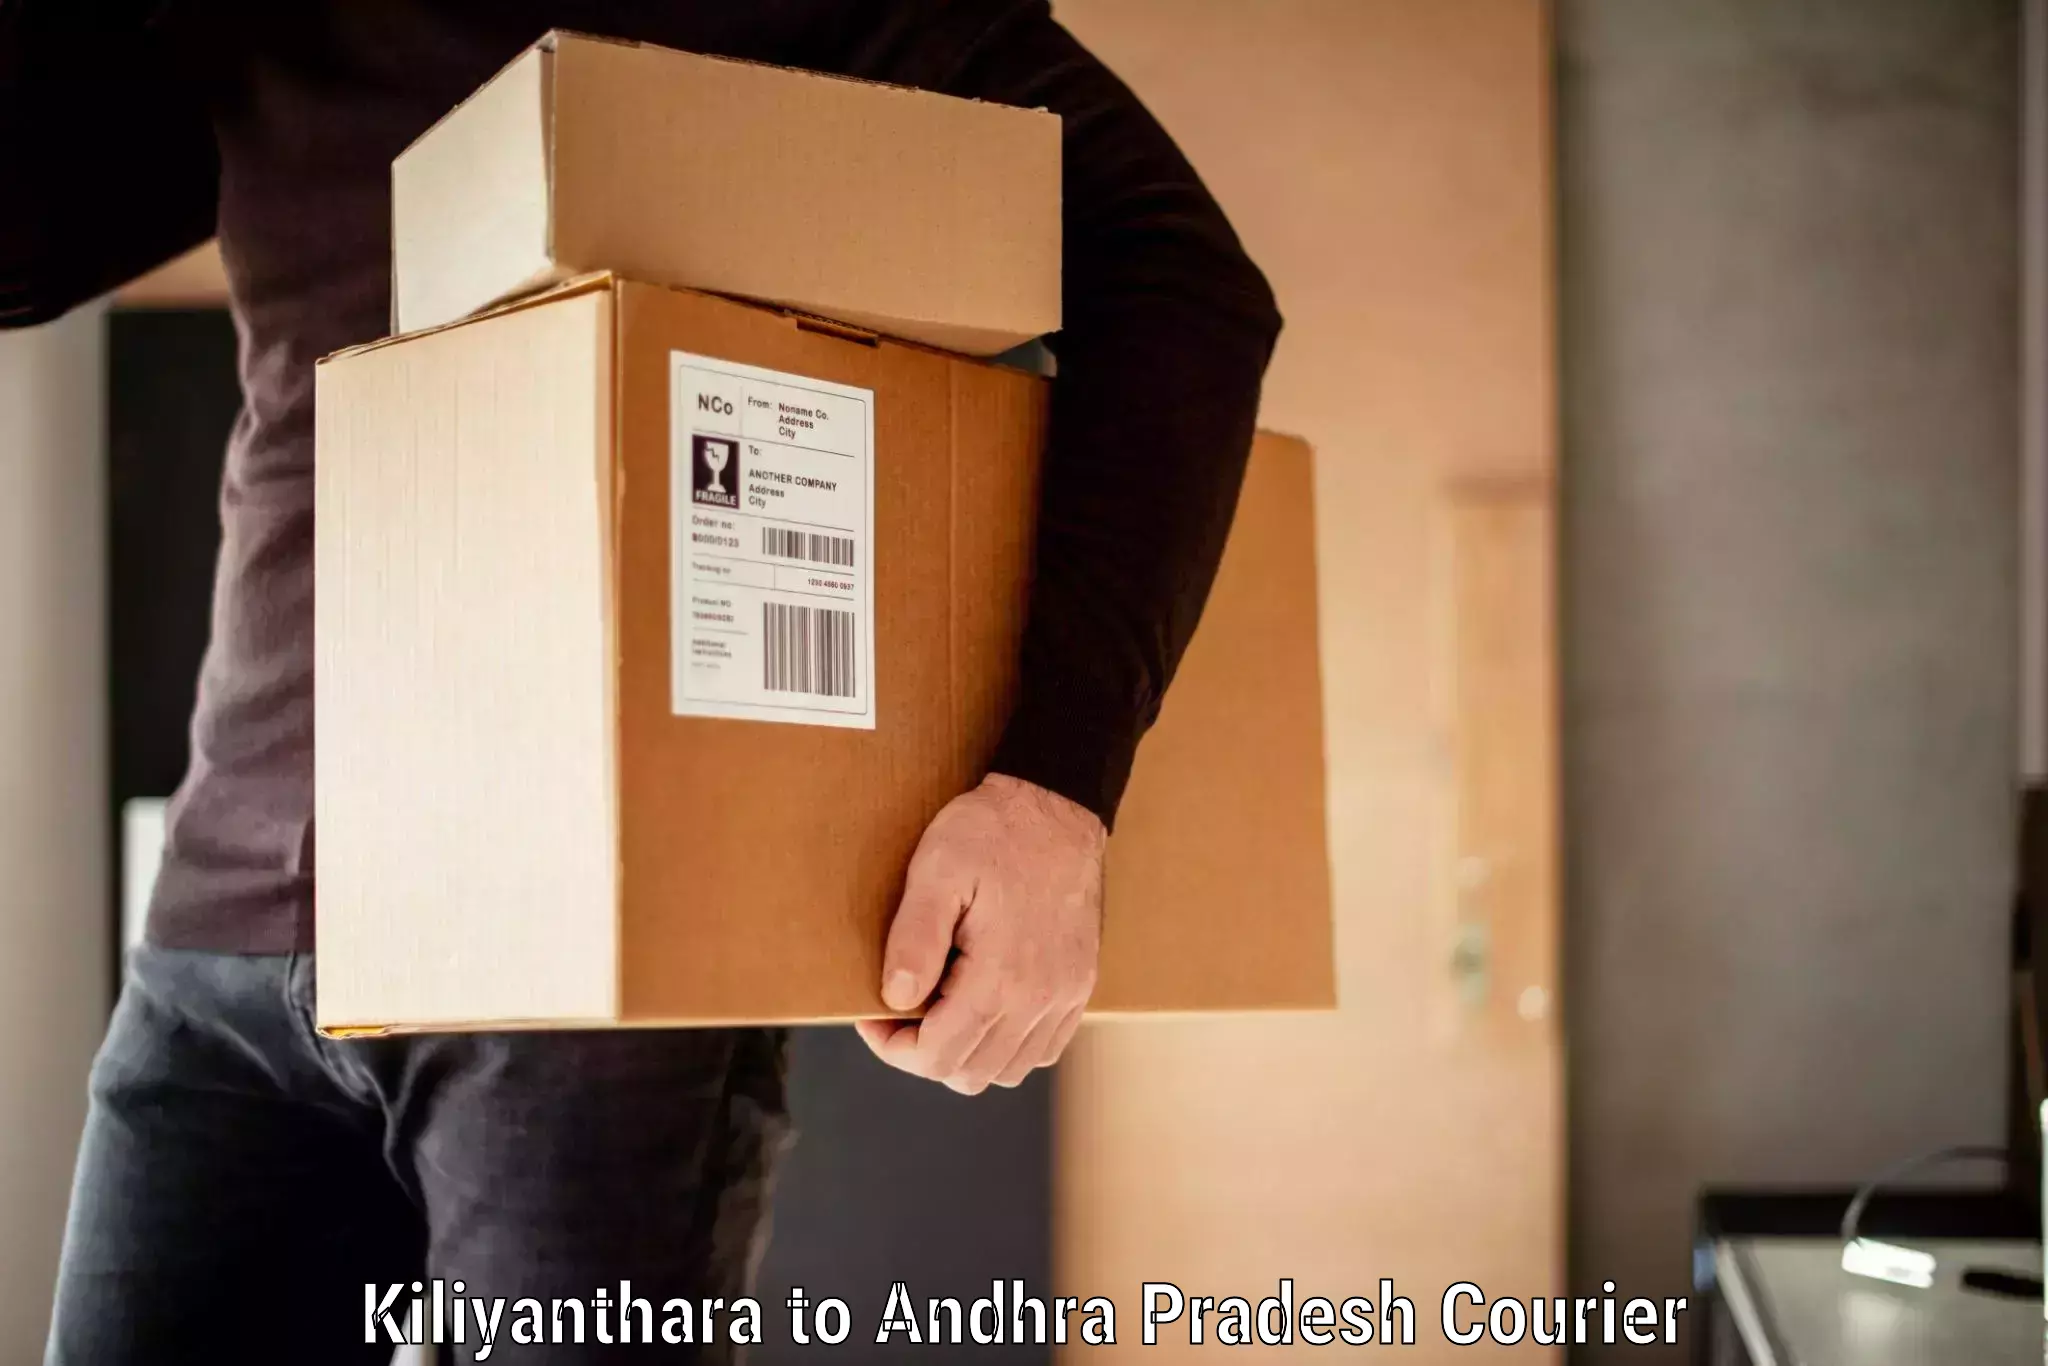 Electronic items luggage shipping Kiliyanthara to Visakhapatnam Port